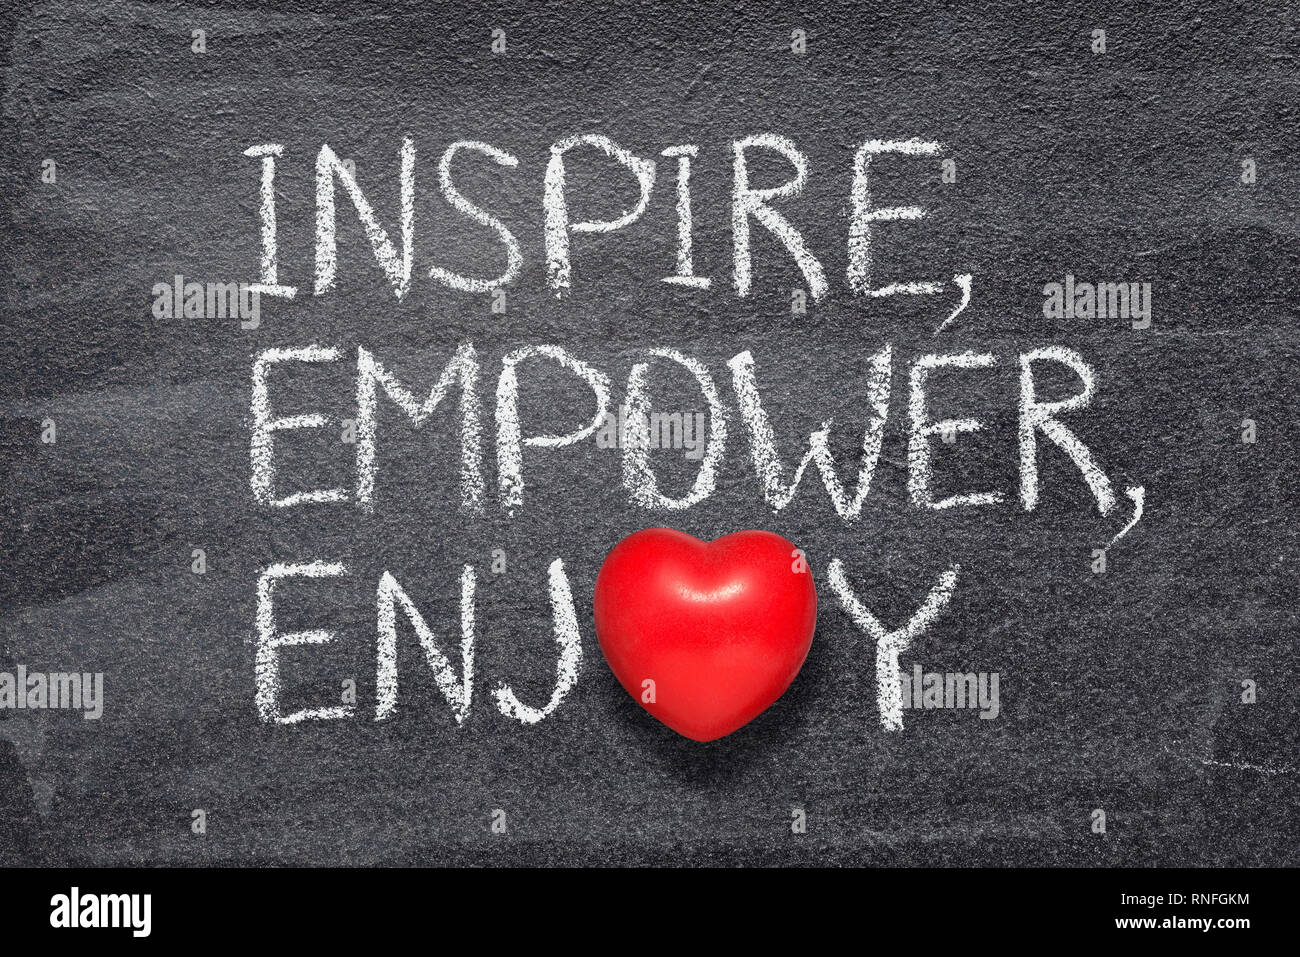 Inspirer, empower, profitez de mots écrits sur tableau noir avec le symbole de coeur rouge au lieu d'O Banque D'Images